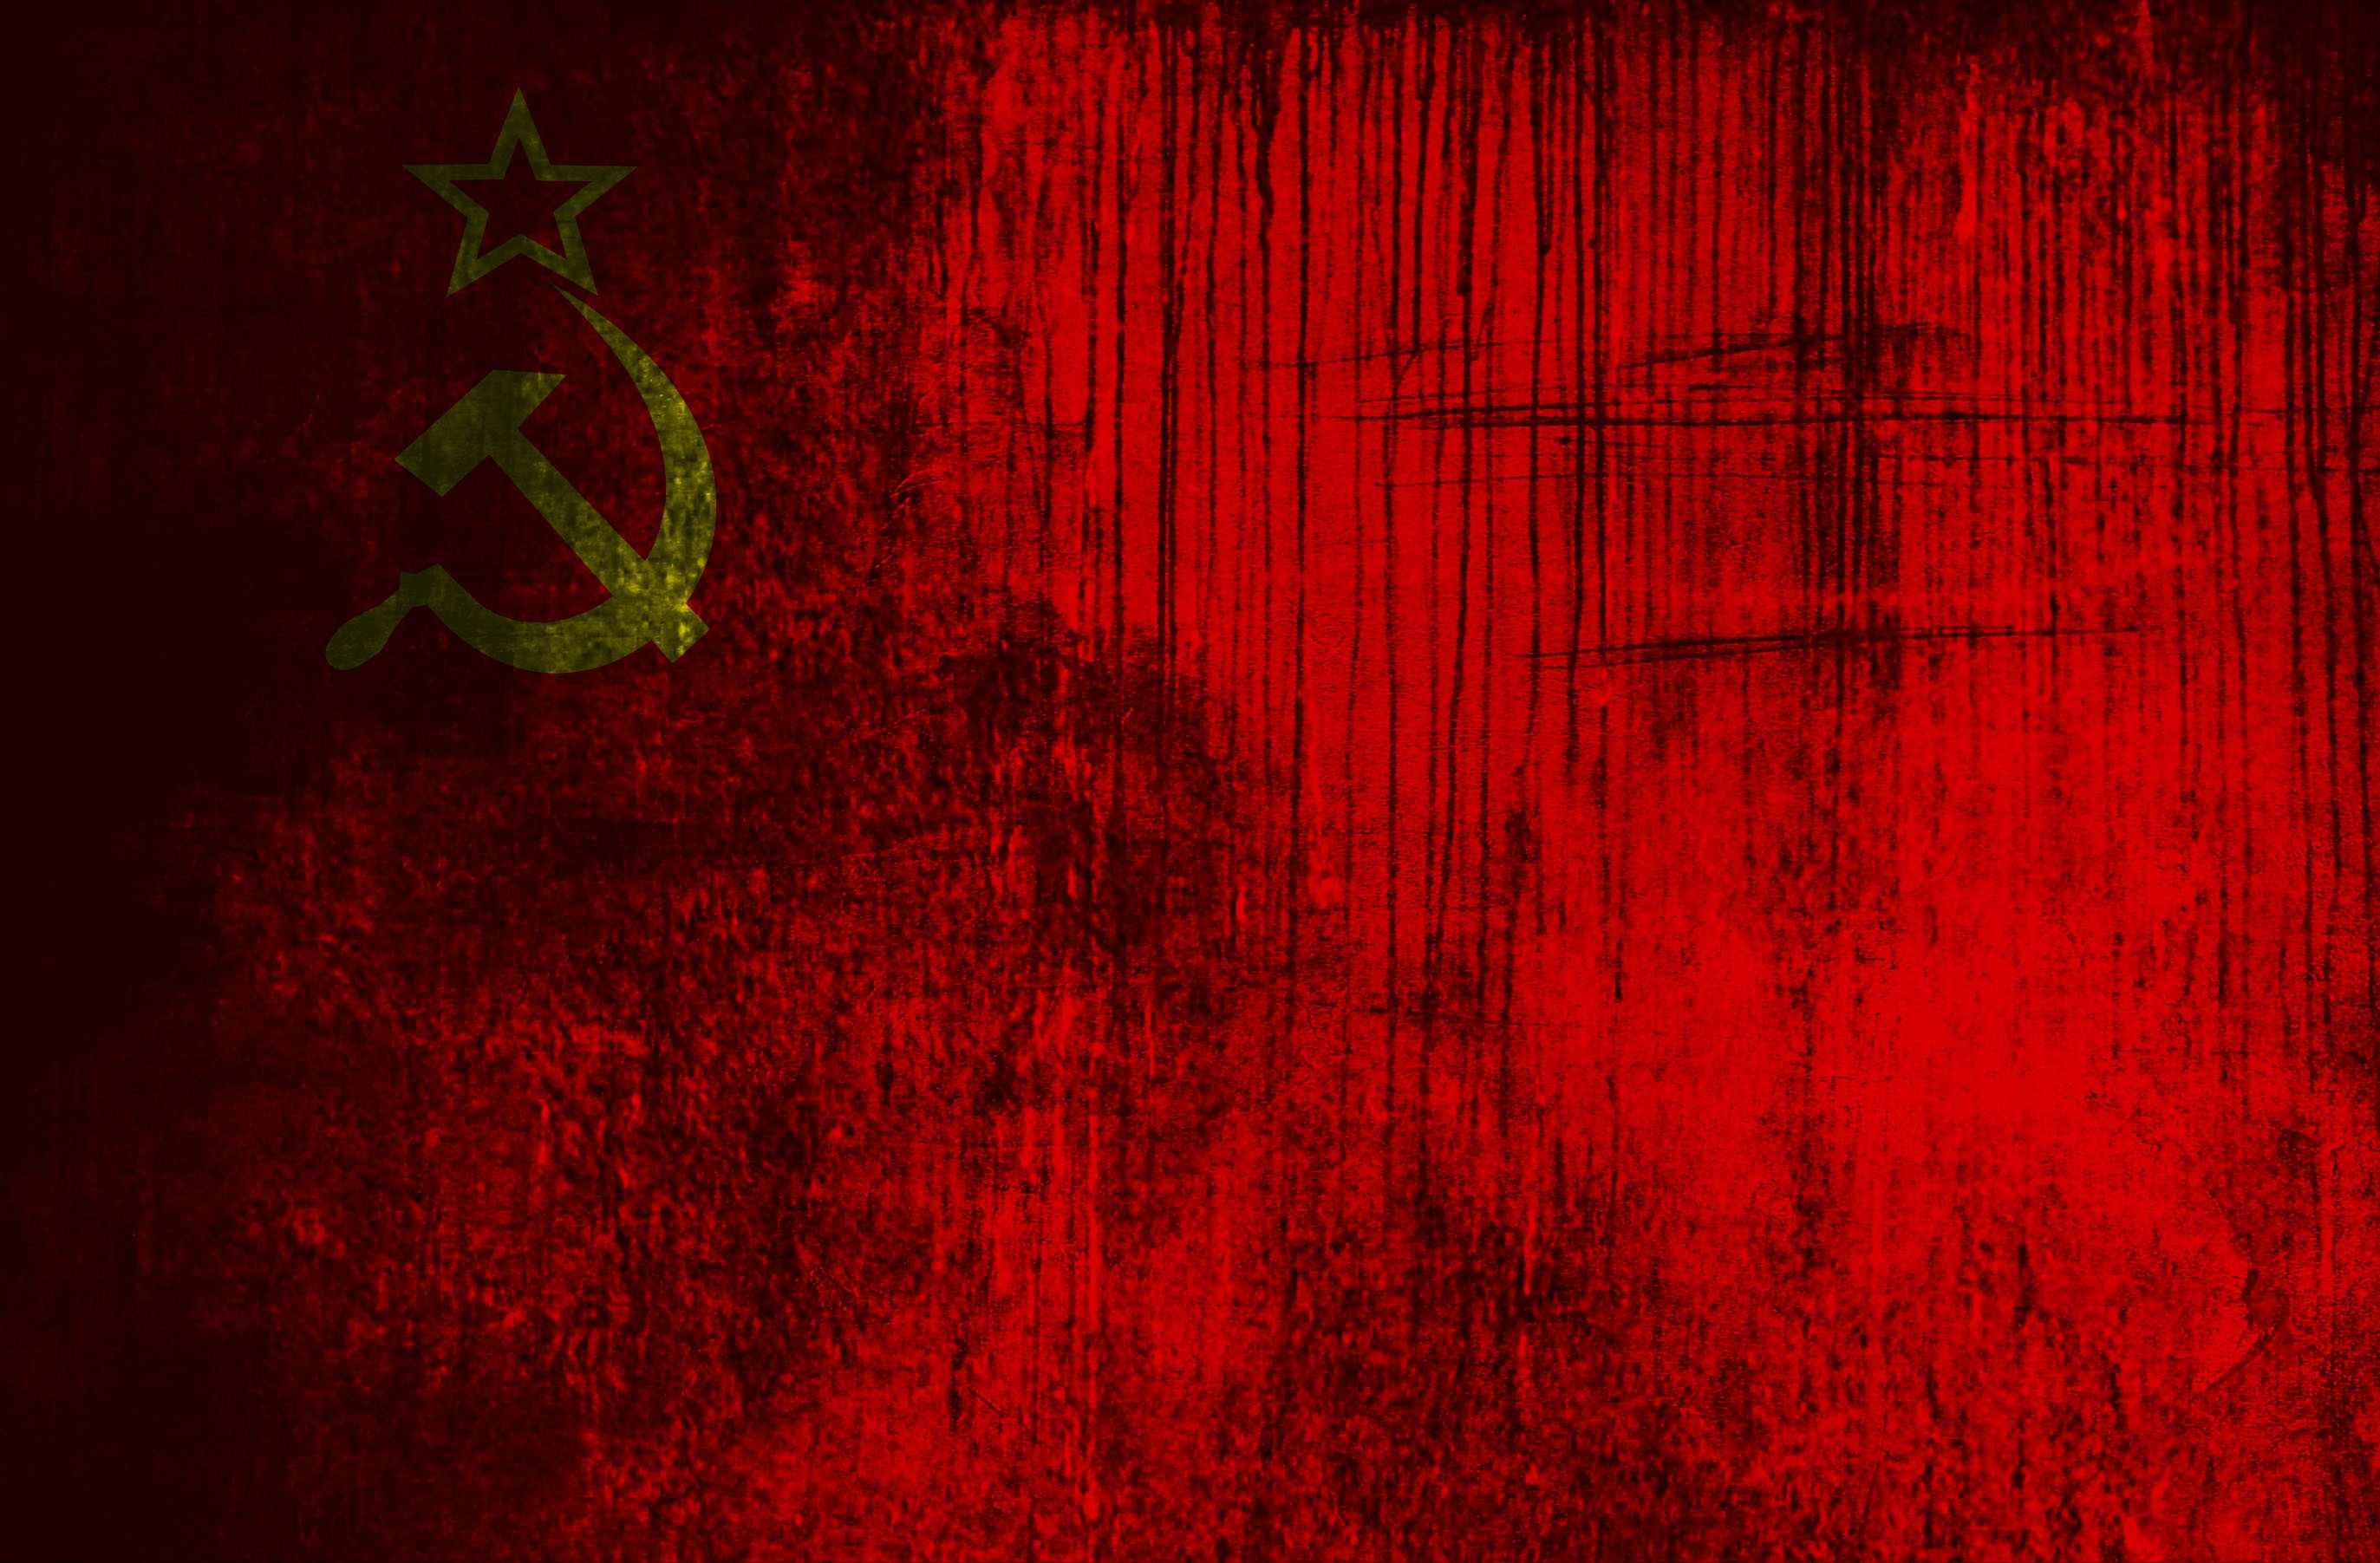 Фон флаг СССР - 25 фото